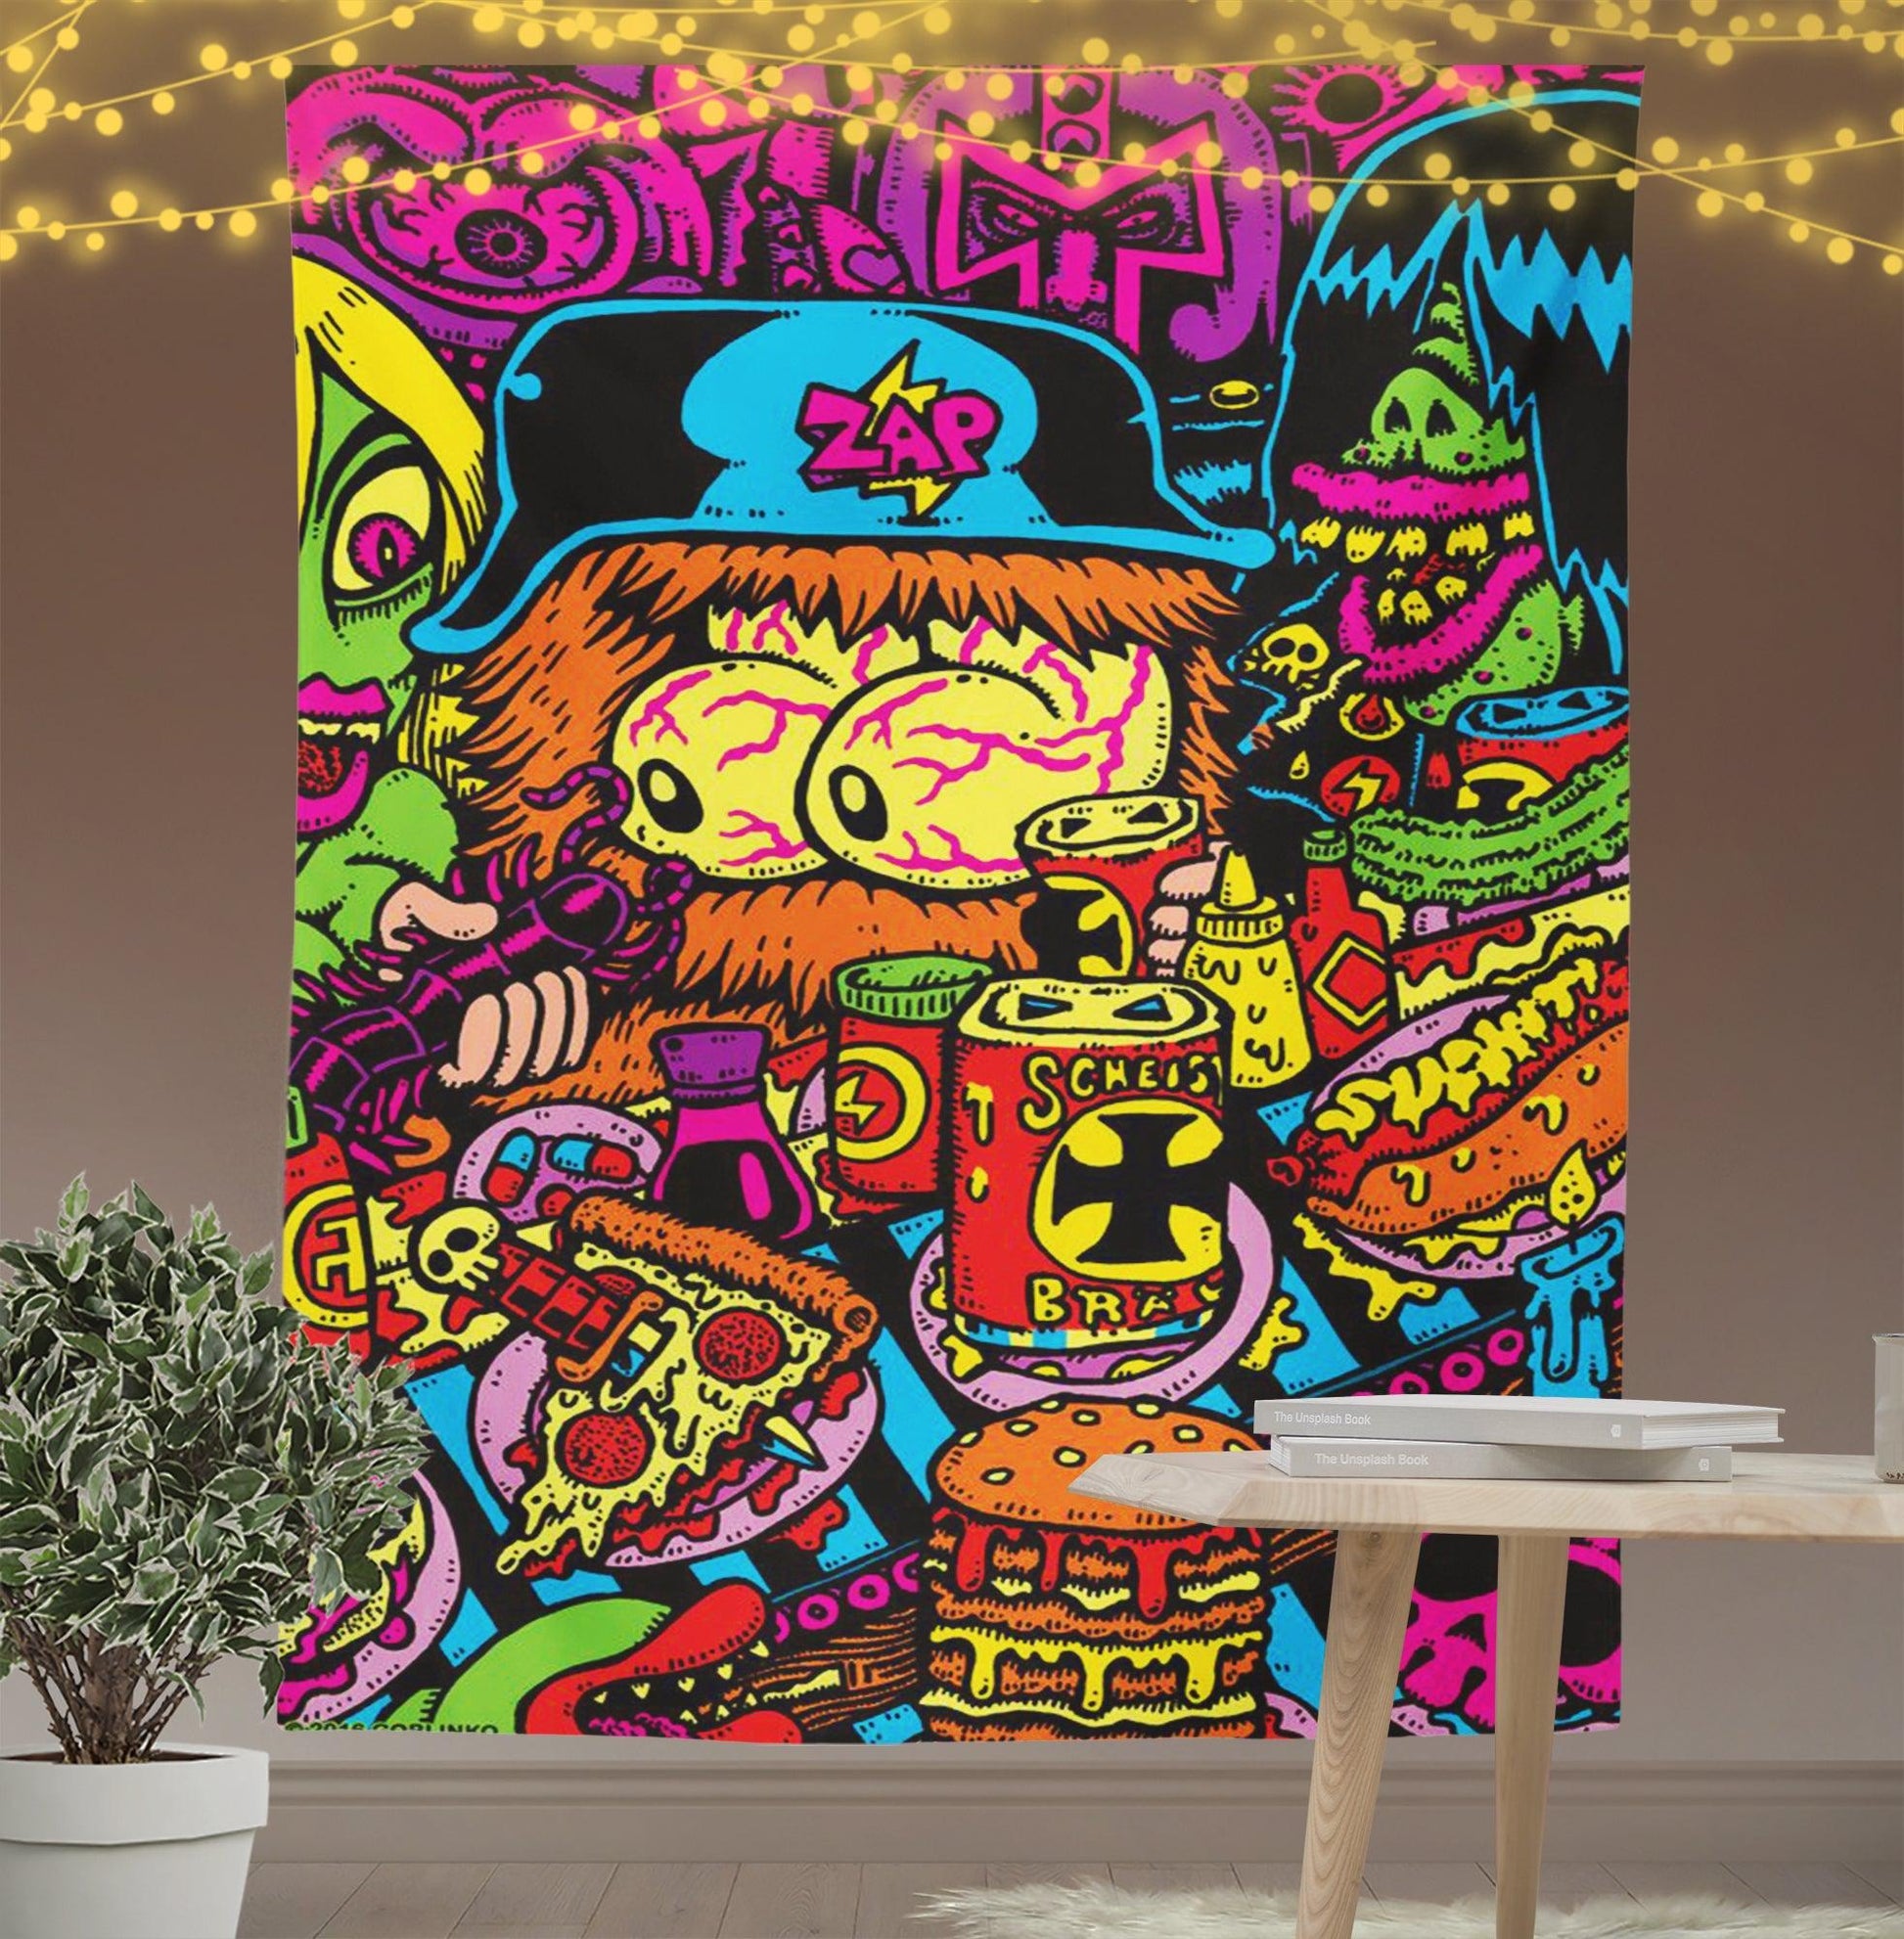 Wiredo Go Round Tapestry-Taspetry-Wallarts Lab-100cm * 150cm-Monkey Ninja